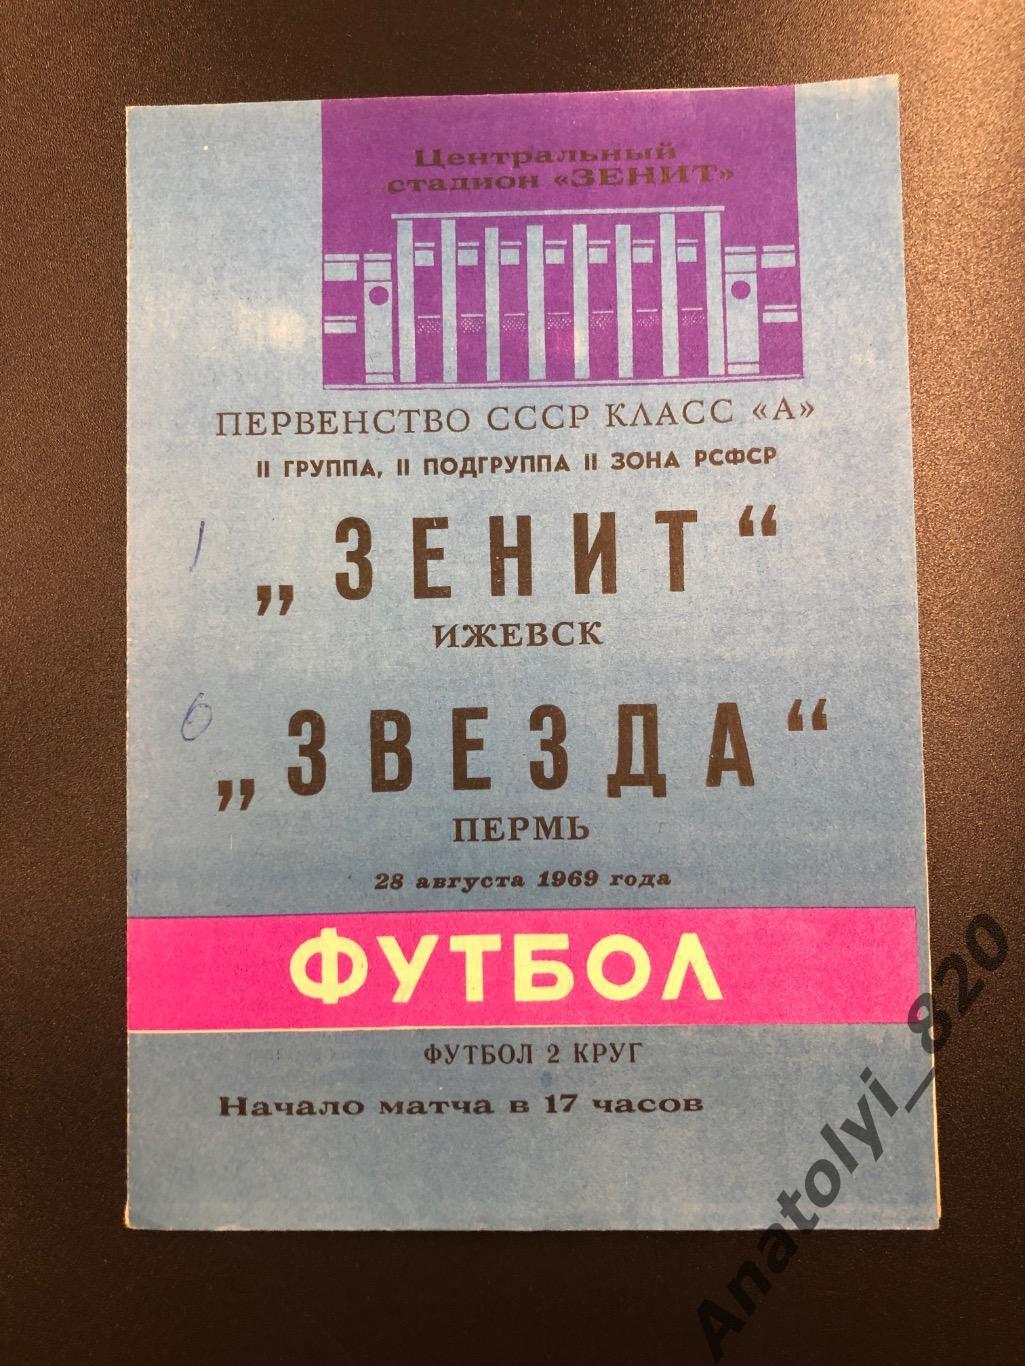 Зенит Ижевск - Звезда Пермь, 28.08.1969